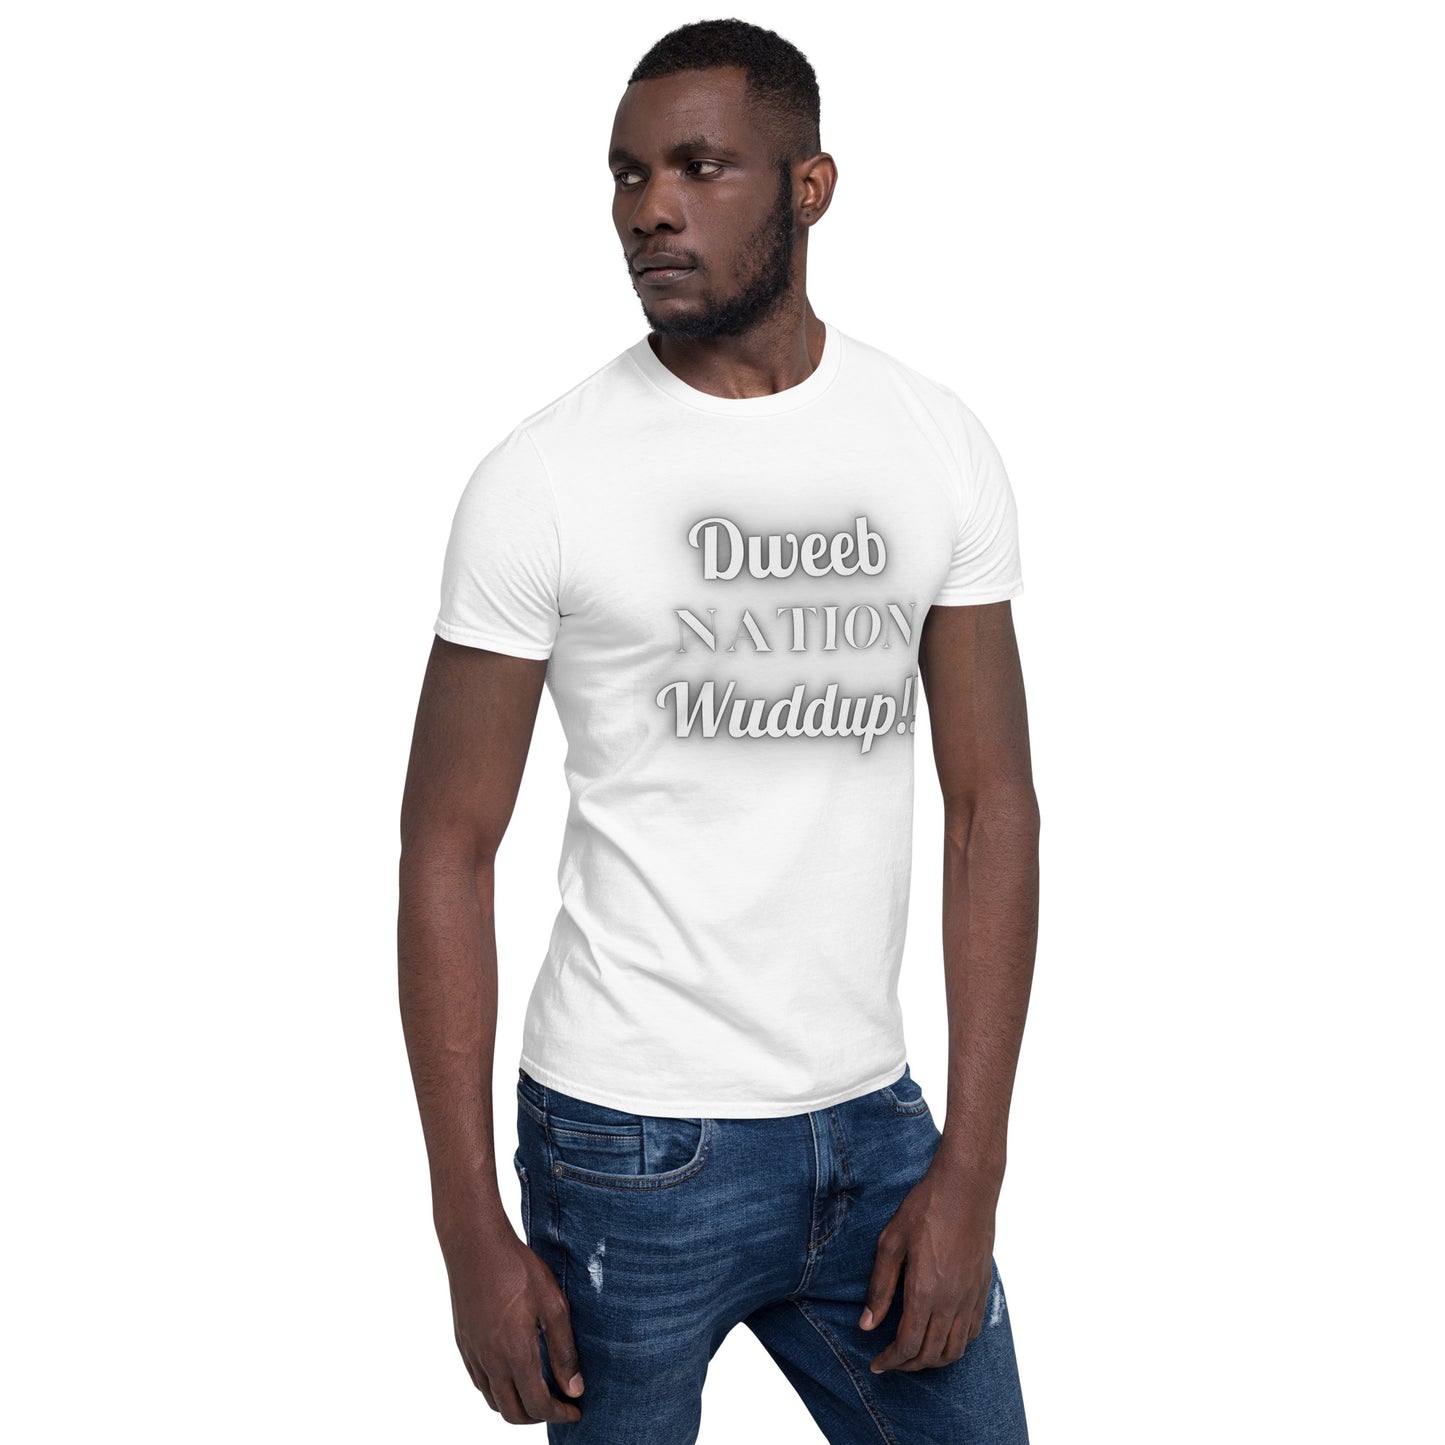 Dweeb Nation Wuddup T-Shirt - Adults